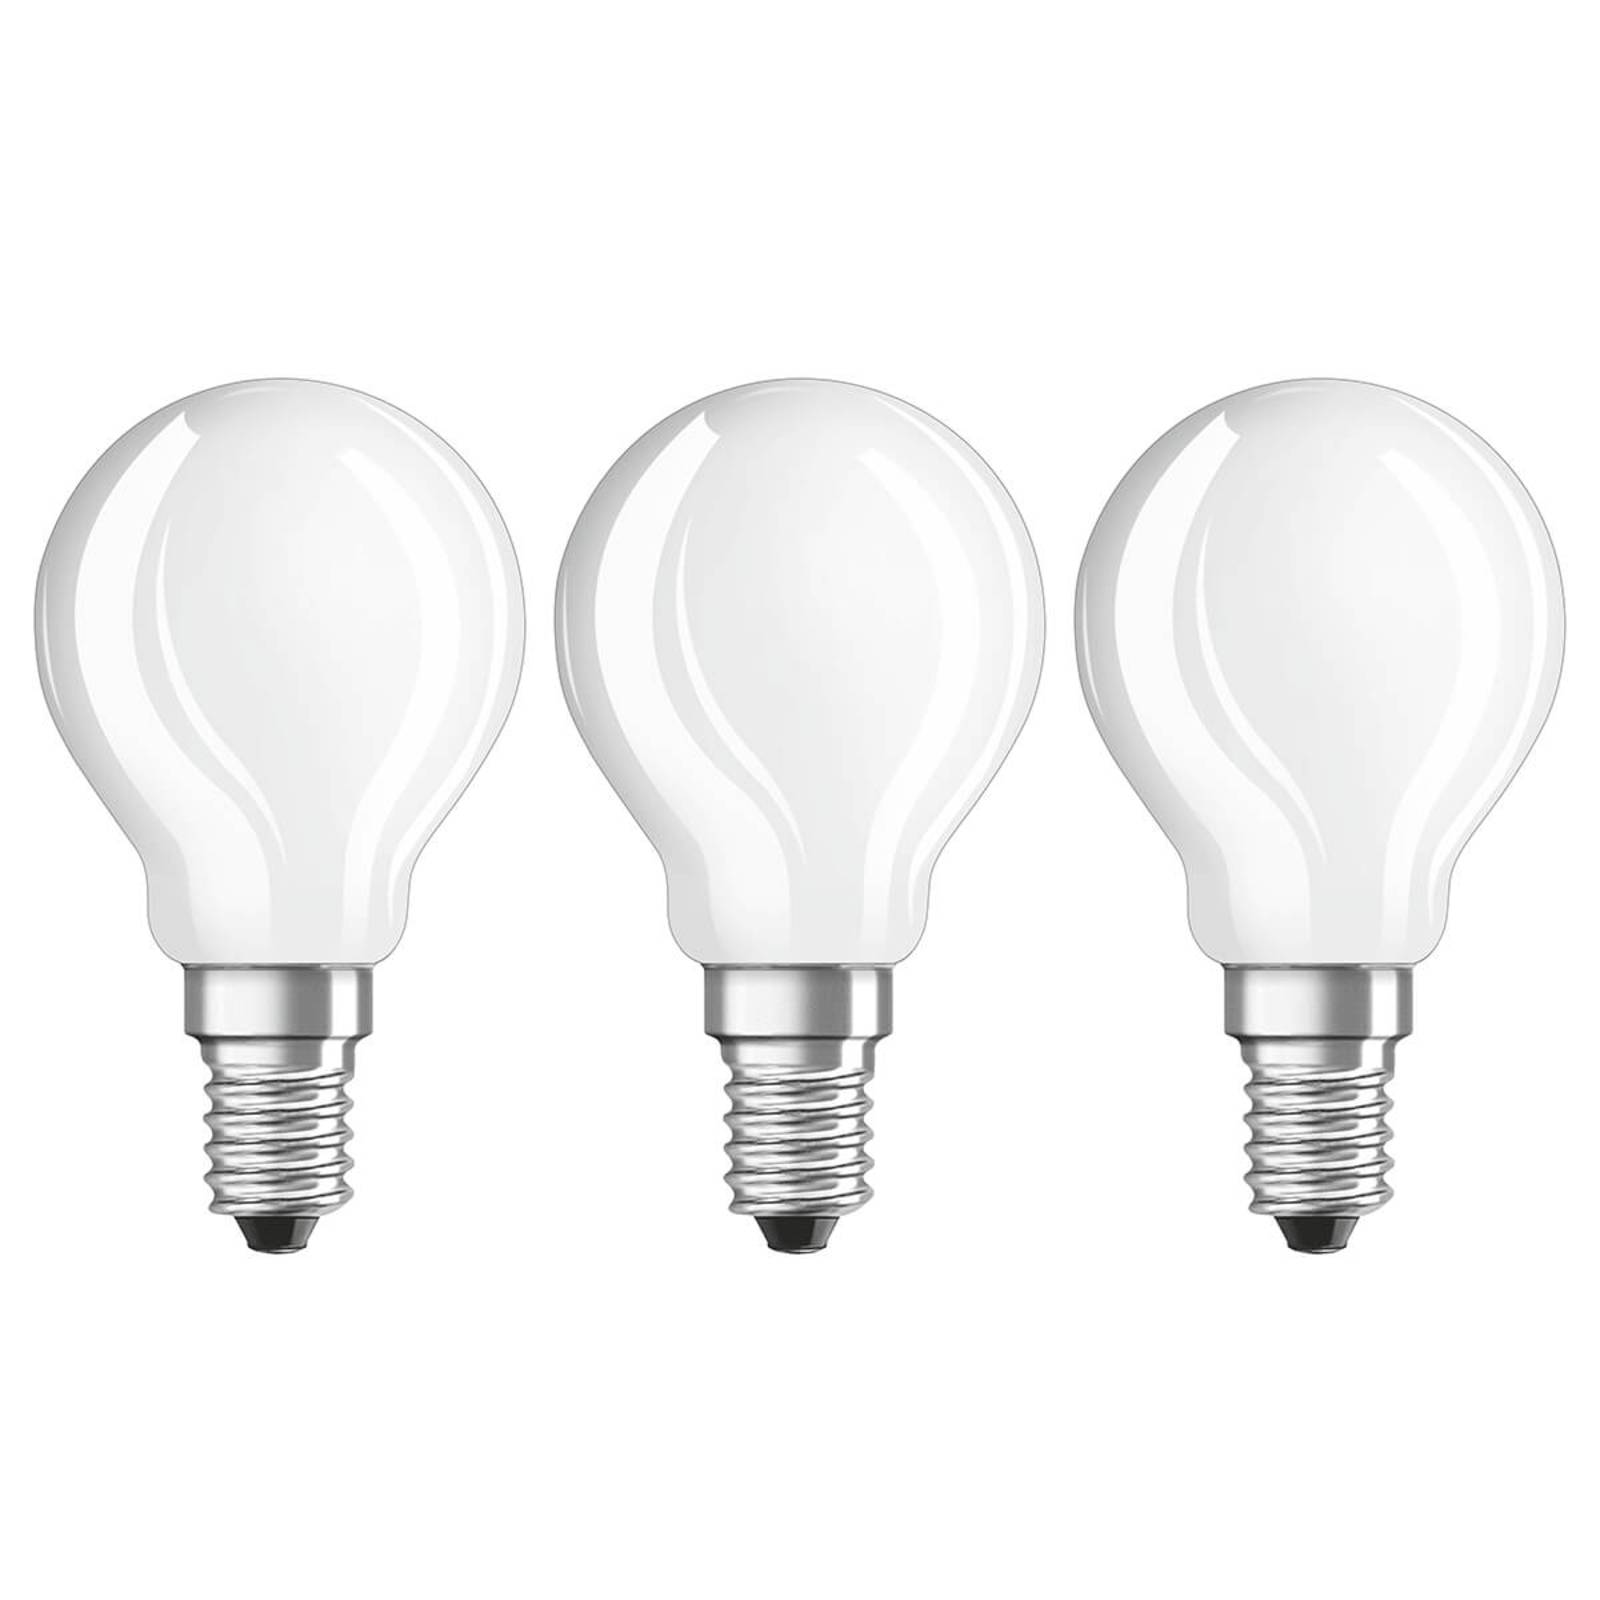 LED lámpa E14 4W, meleg fehér, 470 lumen, 3 db